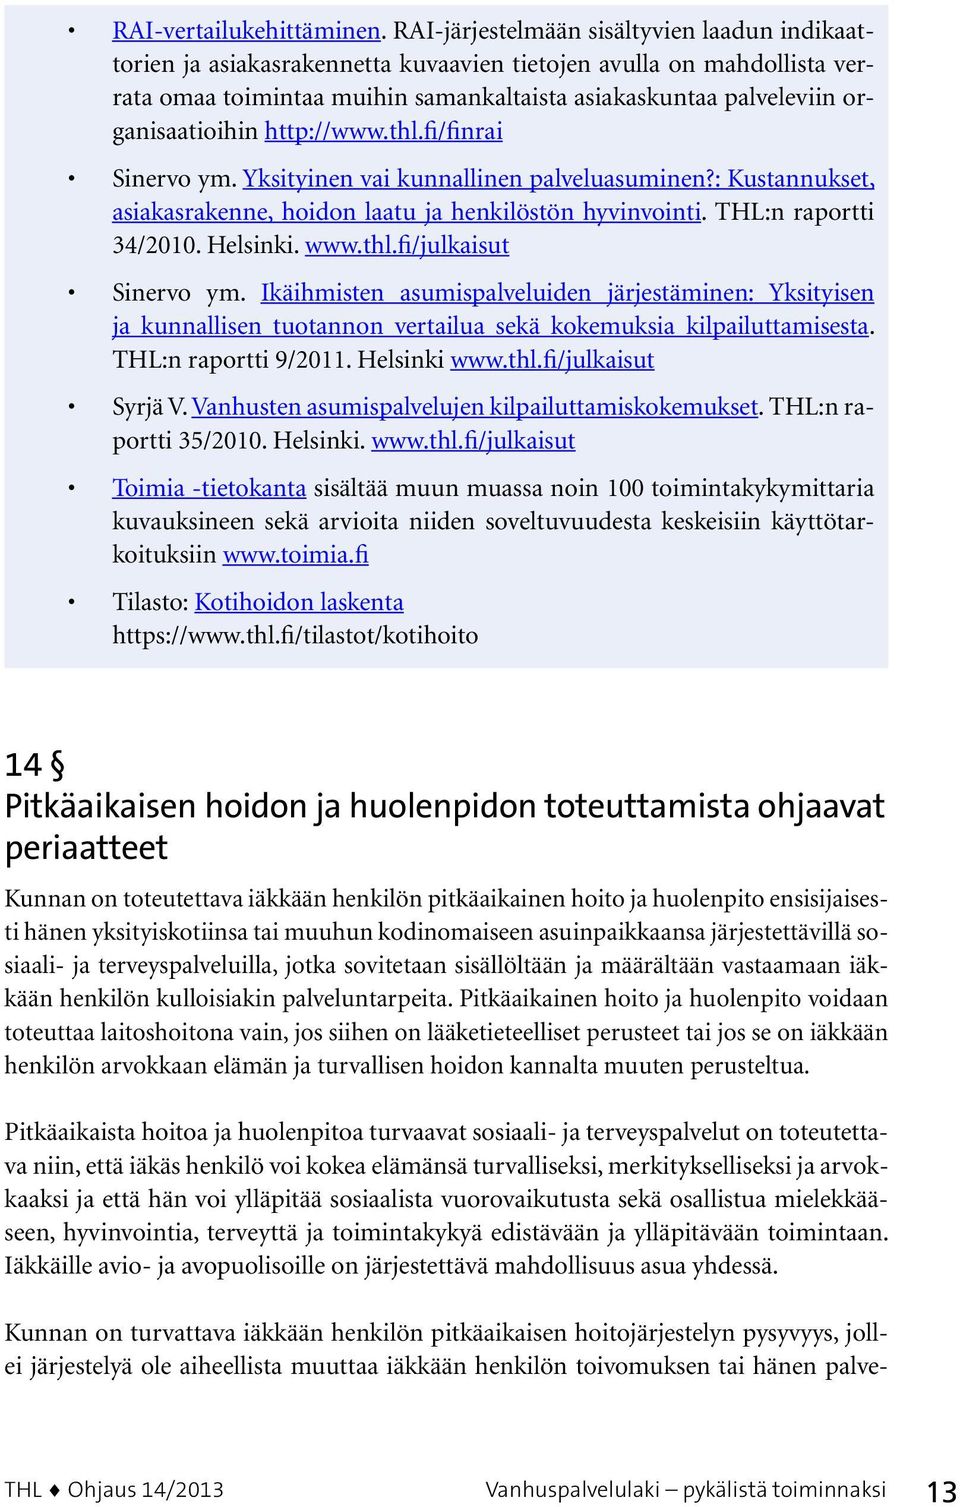 organisaatioihin http://www.thl.fi/finrai Sinervo ym. Yksityinen vai kunnallinen palveluasuminen?: Kustannukset, asiakasrakenne, hoidon laatu ja henkilöstön hyvinvointi. THL:n raportti 34/2010.